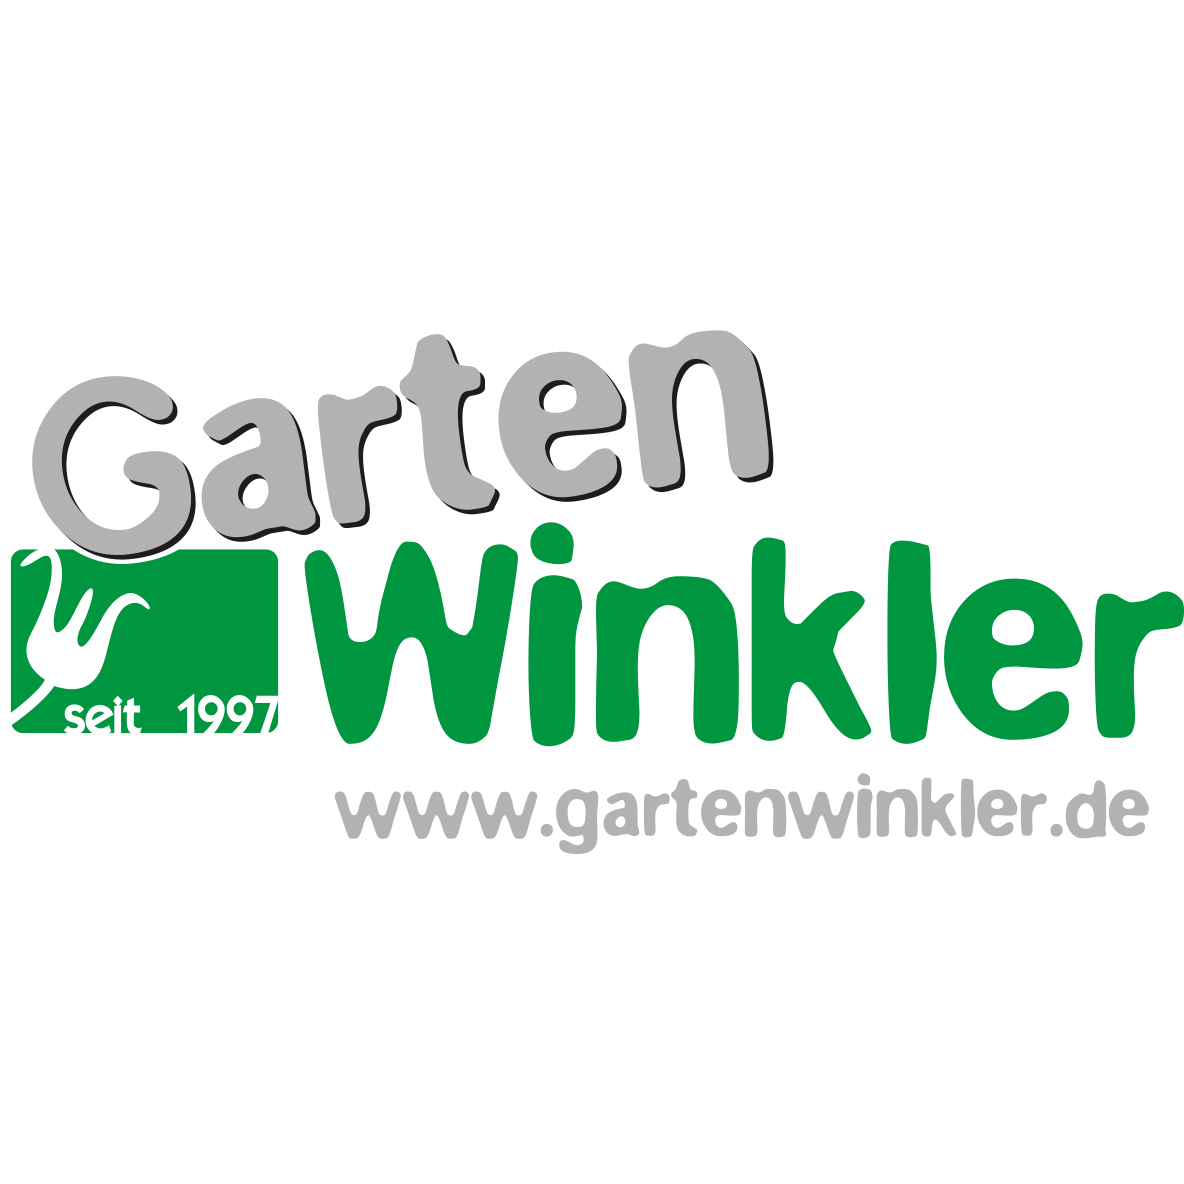 (c) Gartenwinkler.de